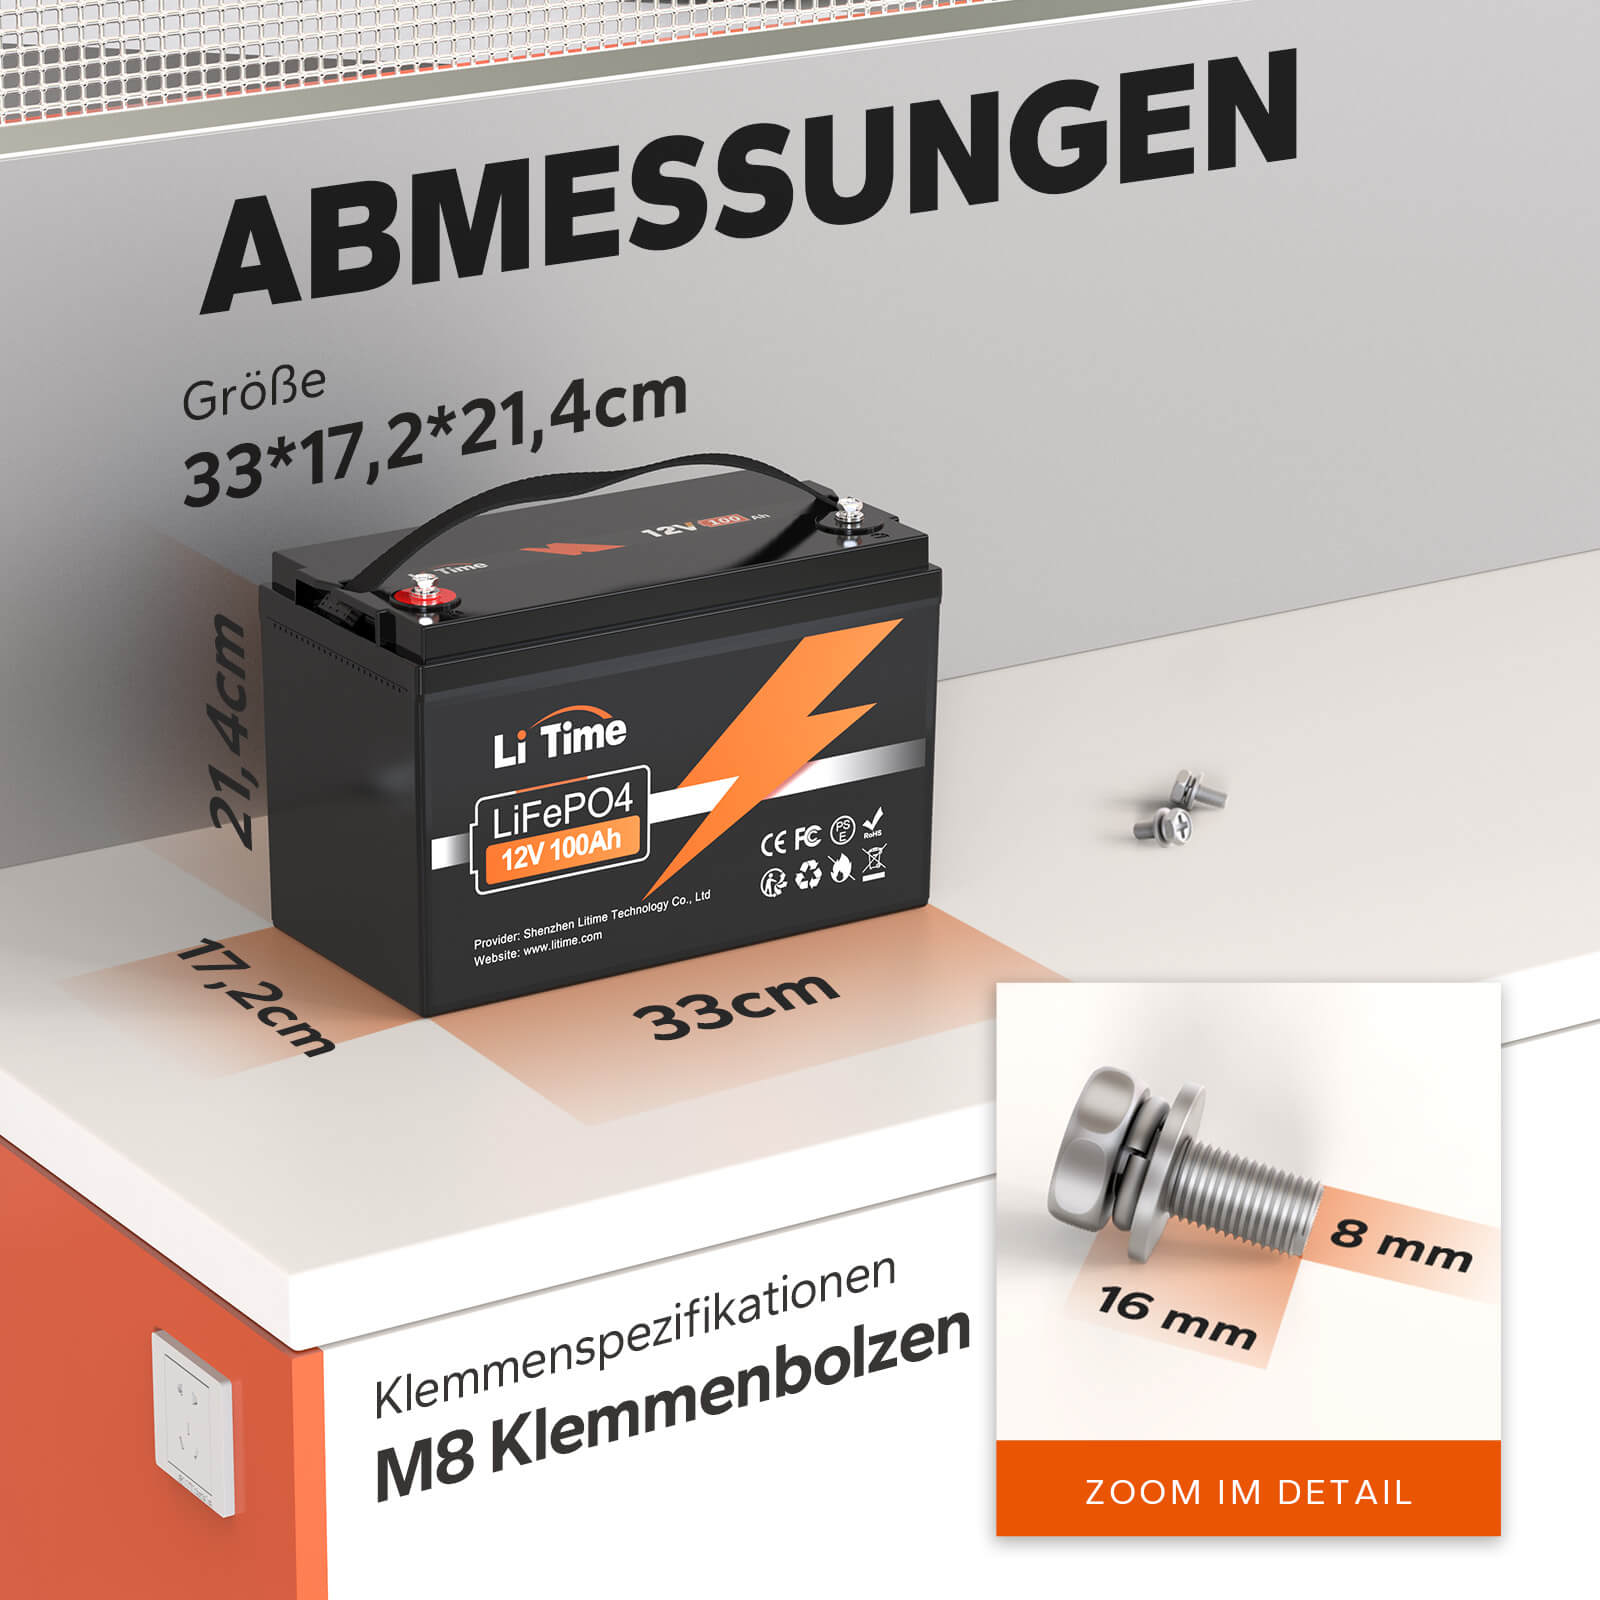 🔥Endpreis: €289,99🔥LiTime 12V 100Ah LiFePO4 Lithium Batterie